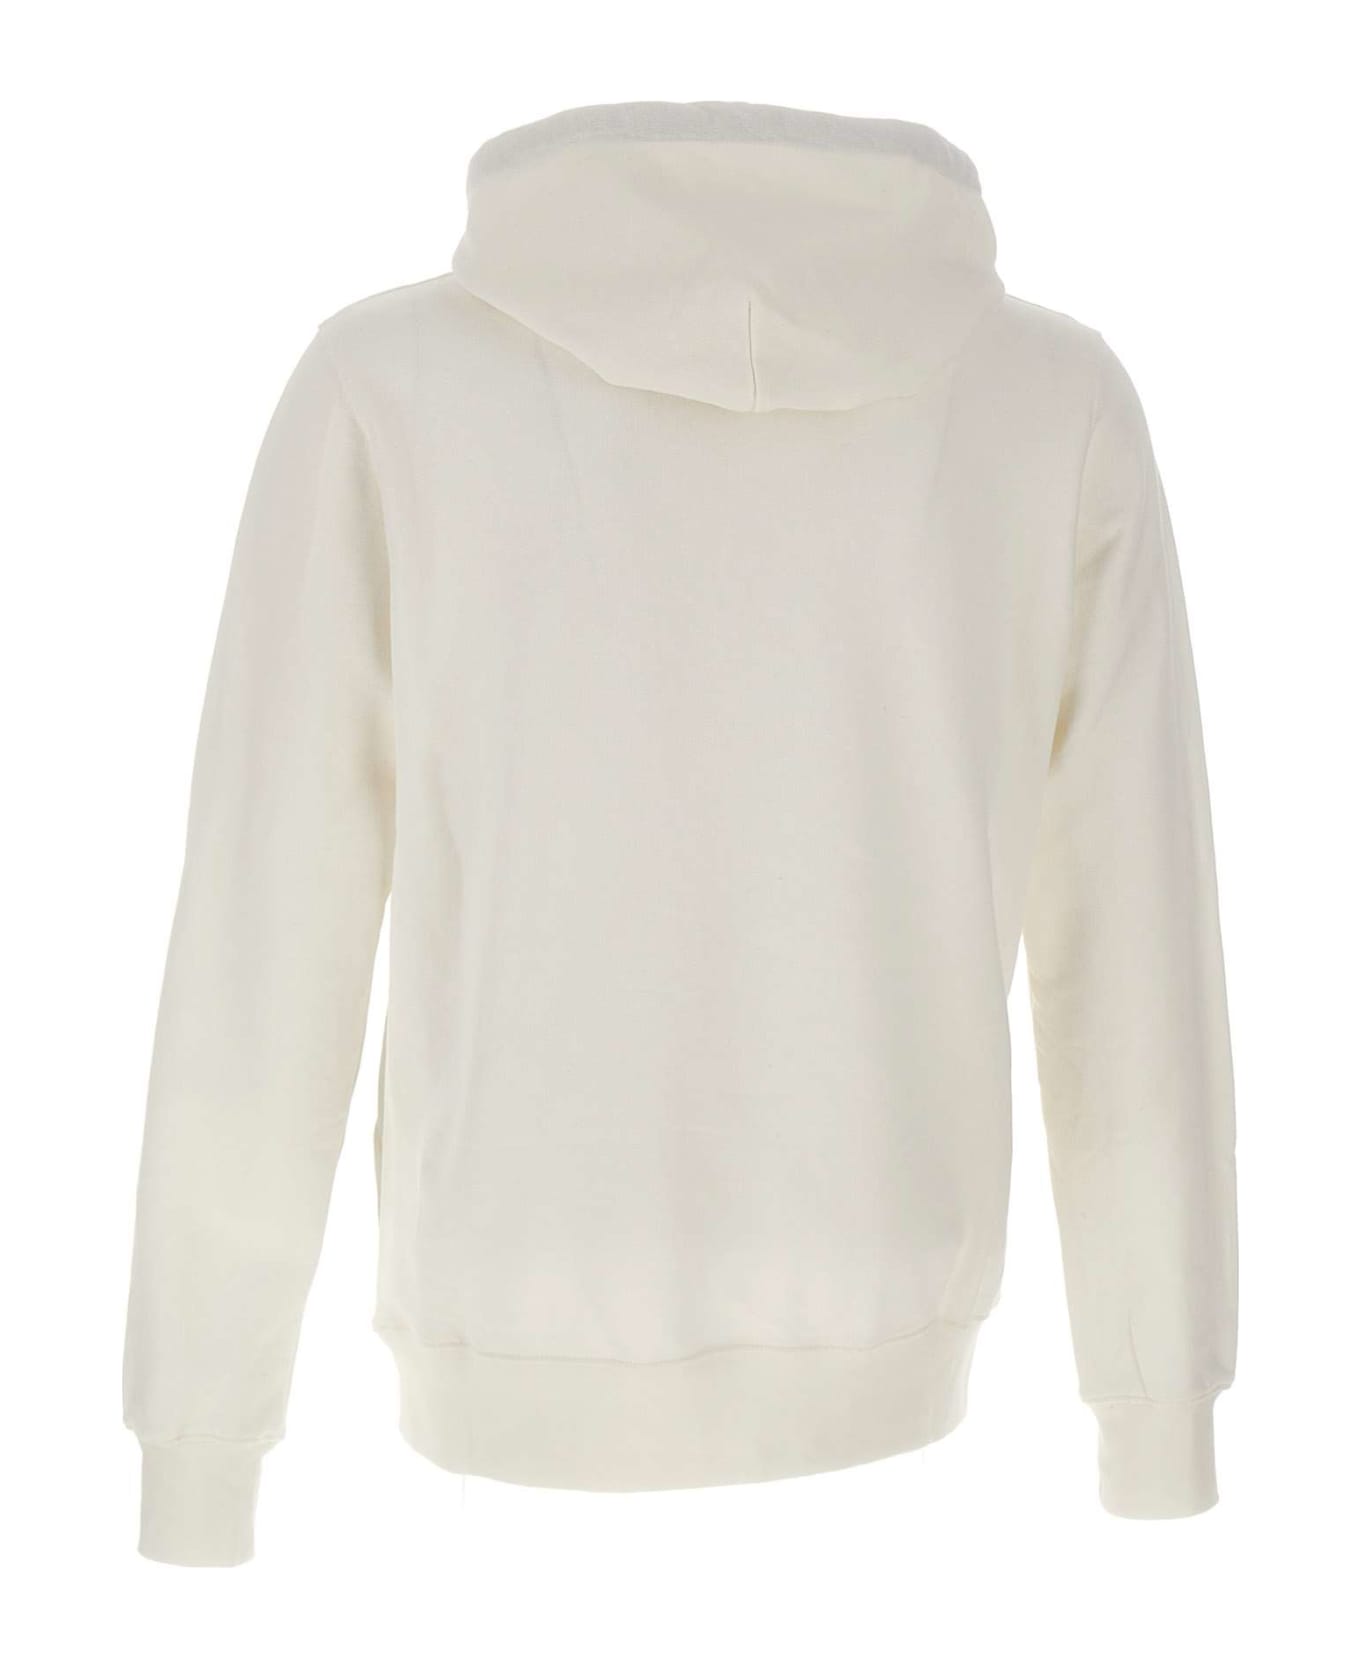 Vilebrequin Cotton Sweatshirt - WHITE